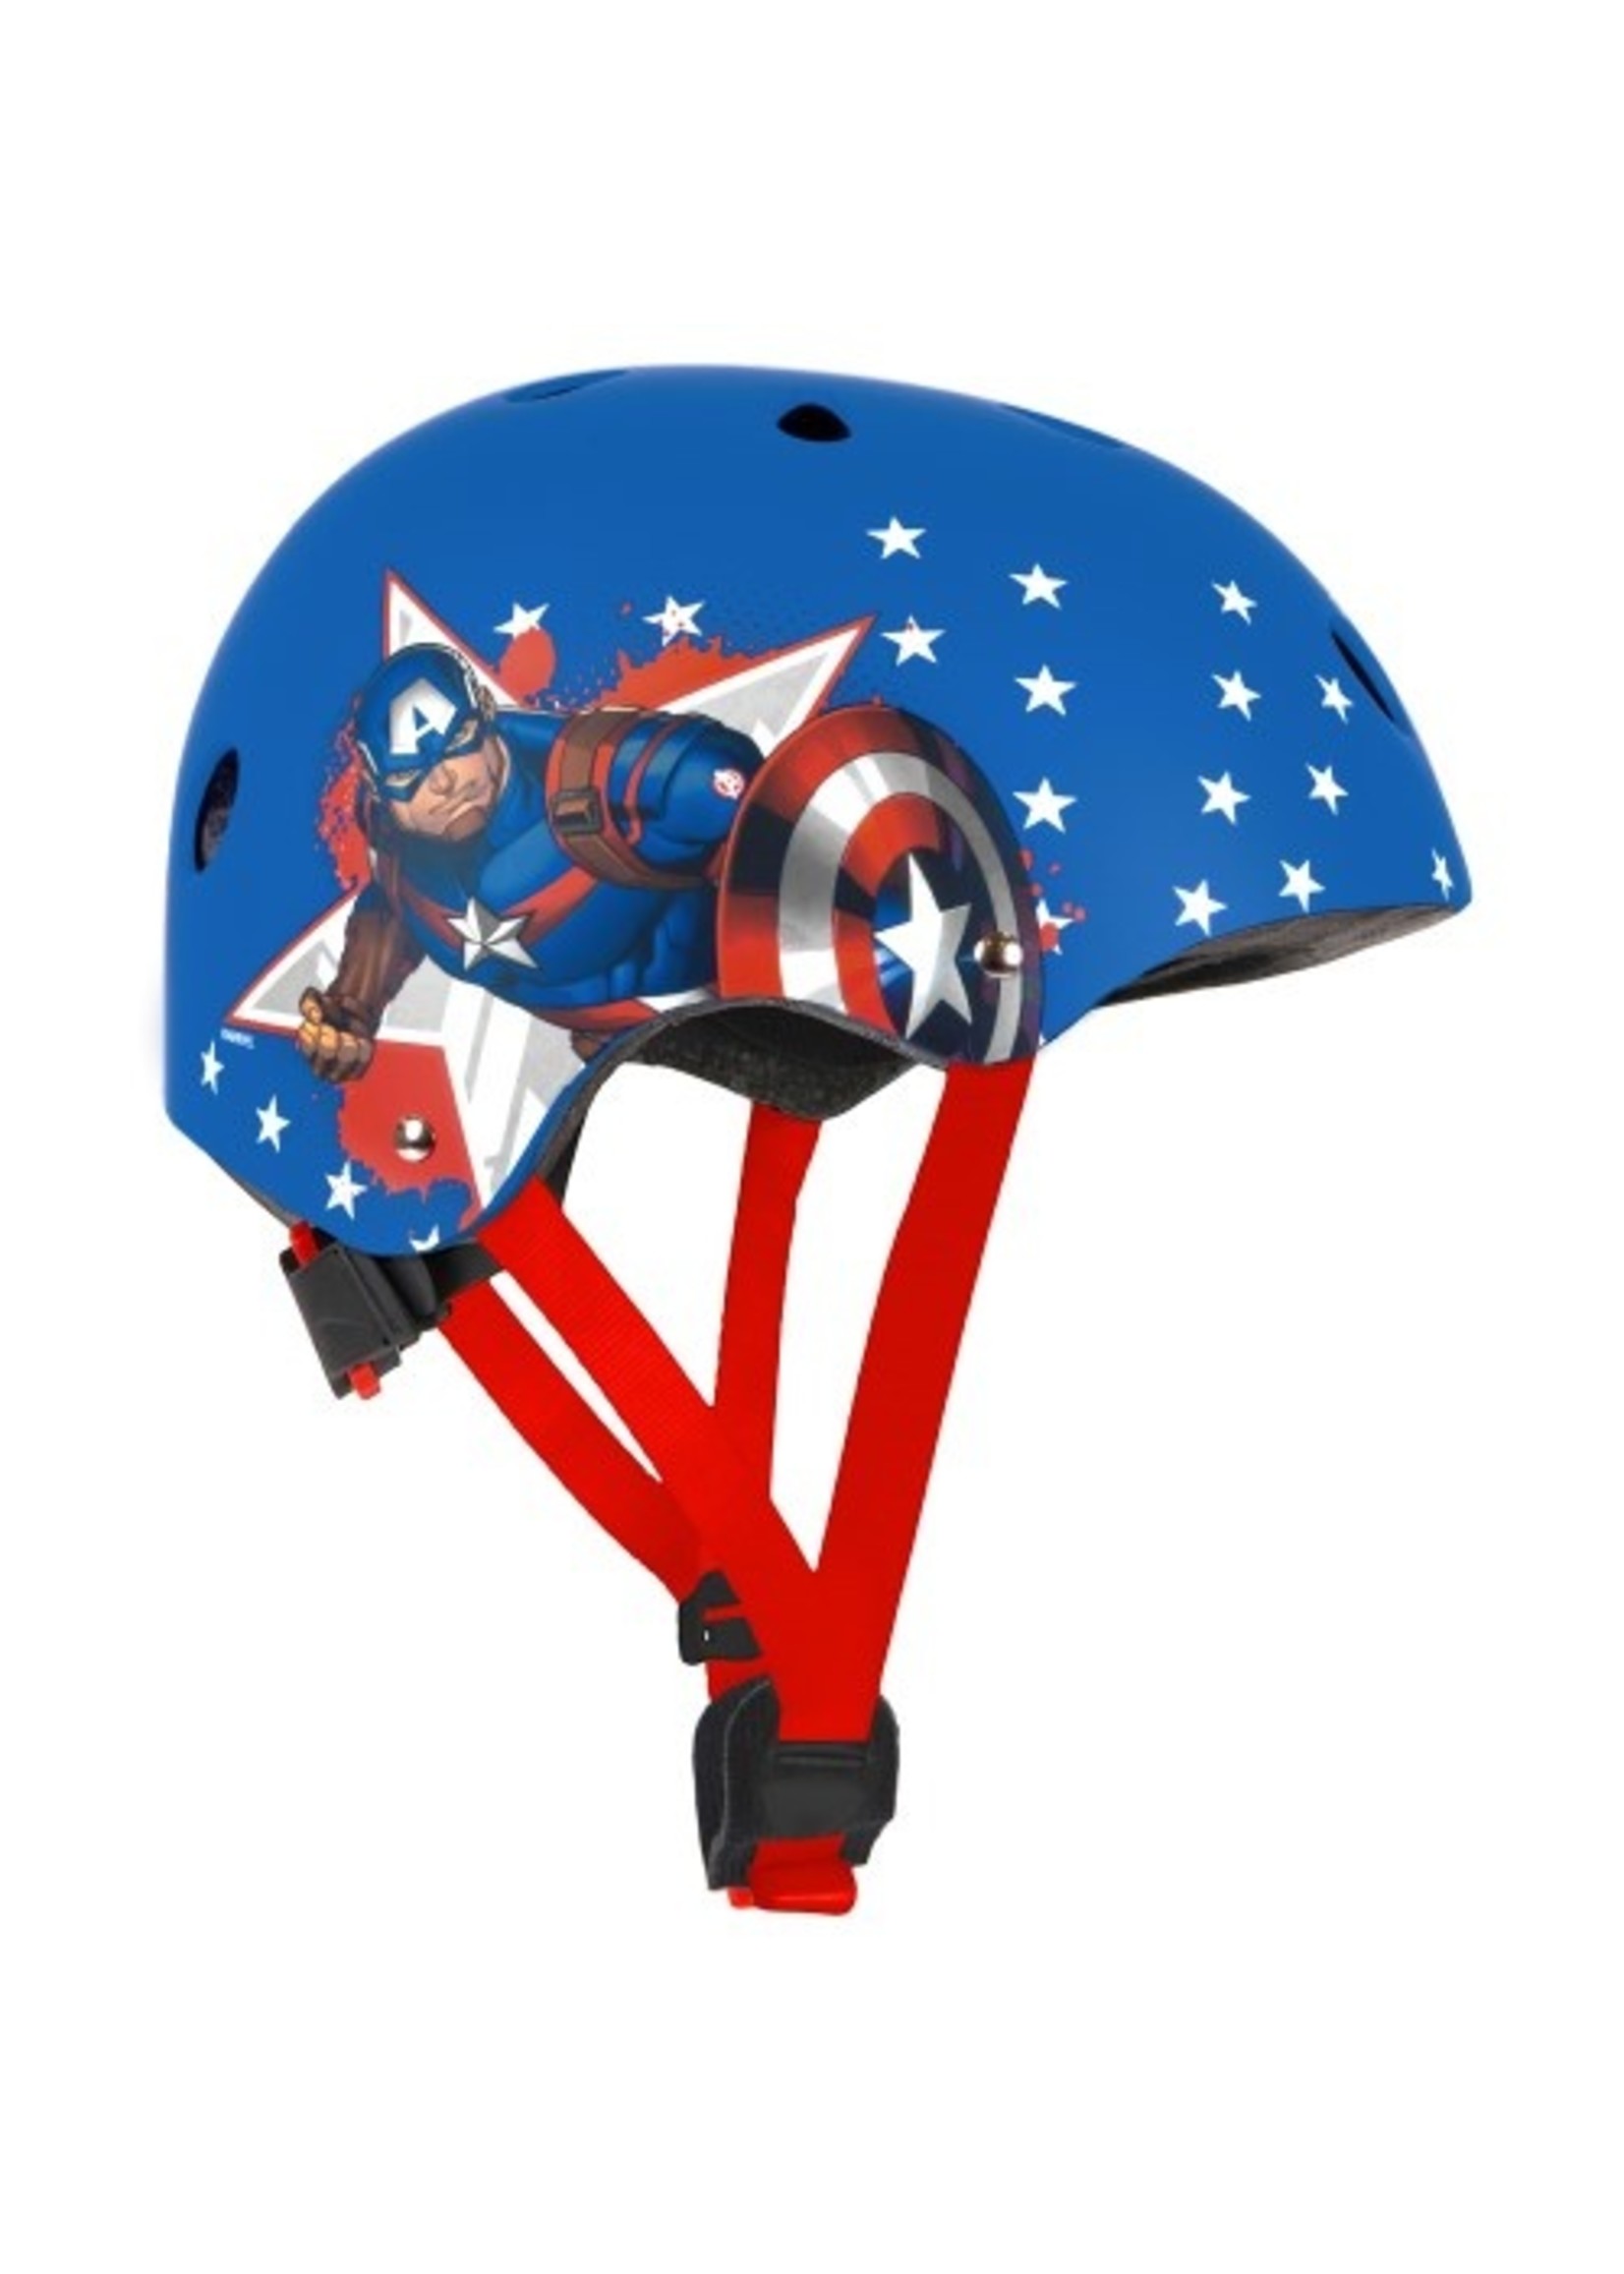 Marvel Captain America skate helmet from Marvel